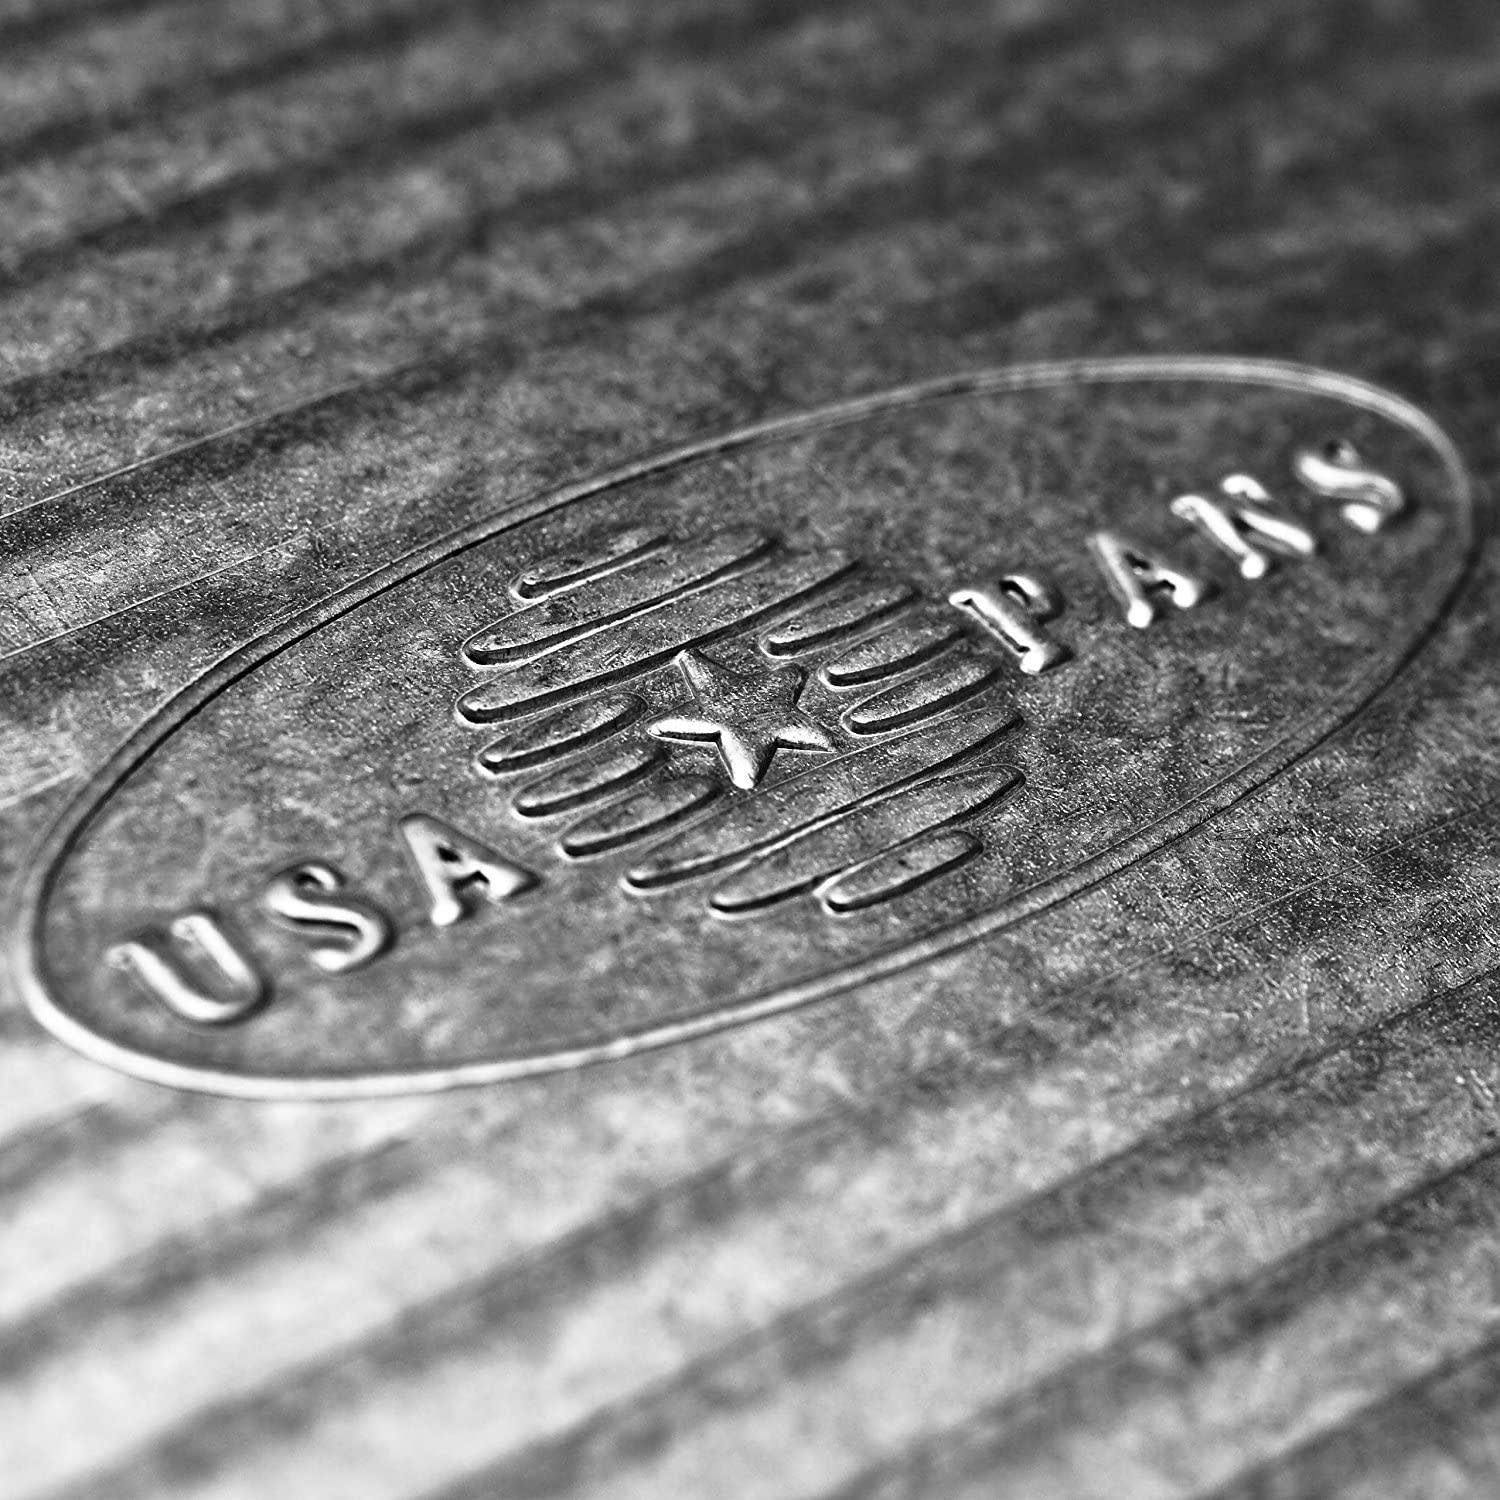 USA PAN Half Sheet Pan in Gray